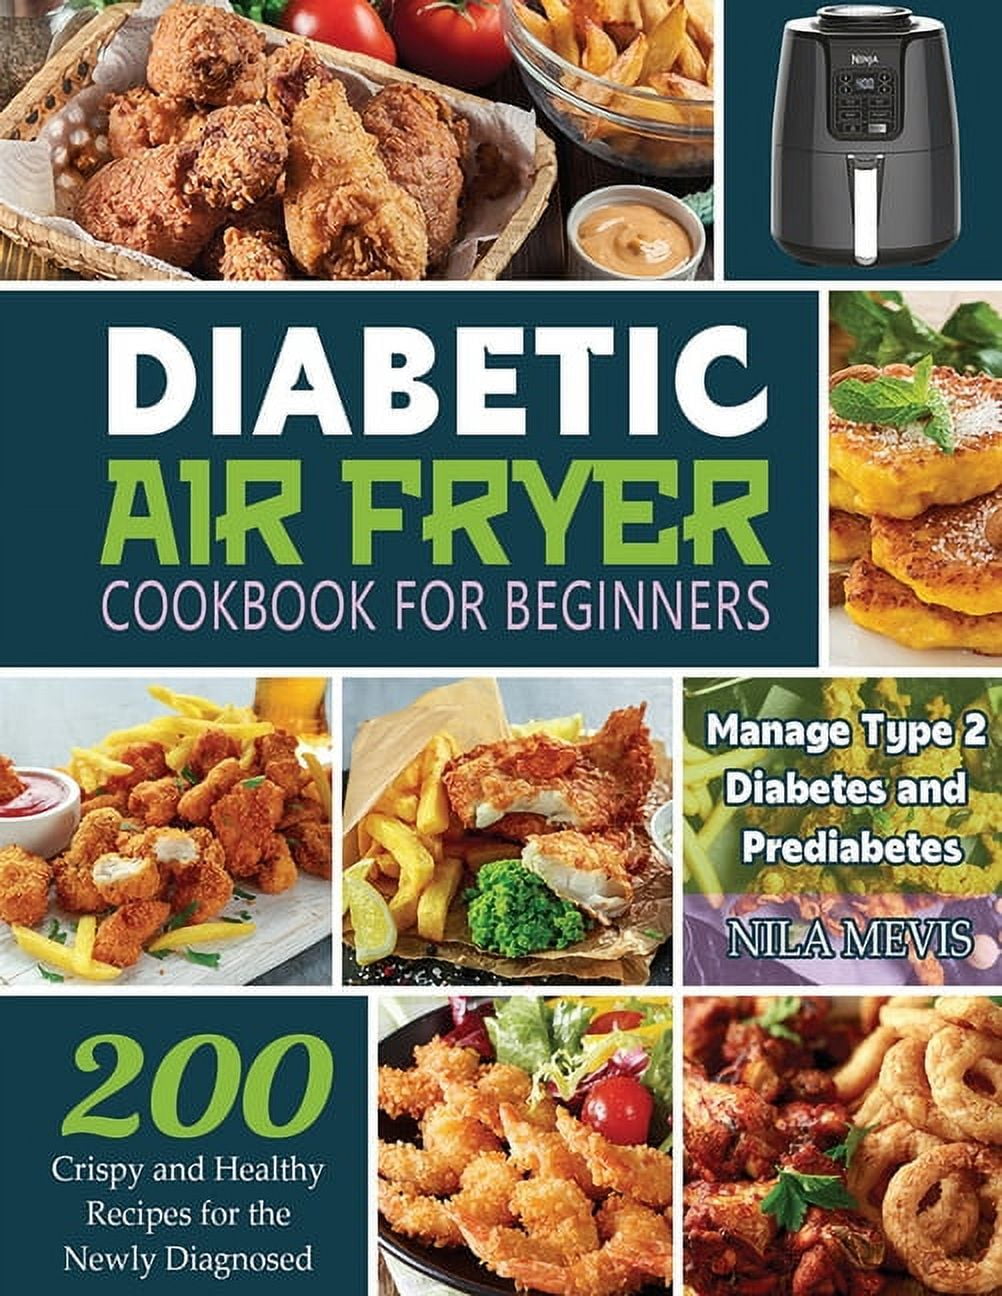 5-Ingredient diabetes air fryer cookbook 800: 125 Budget-Friendly